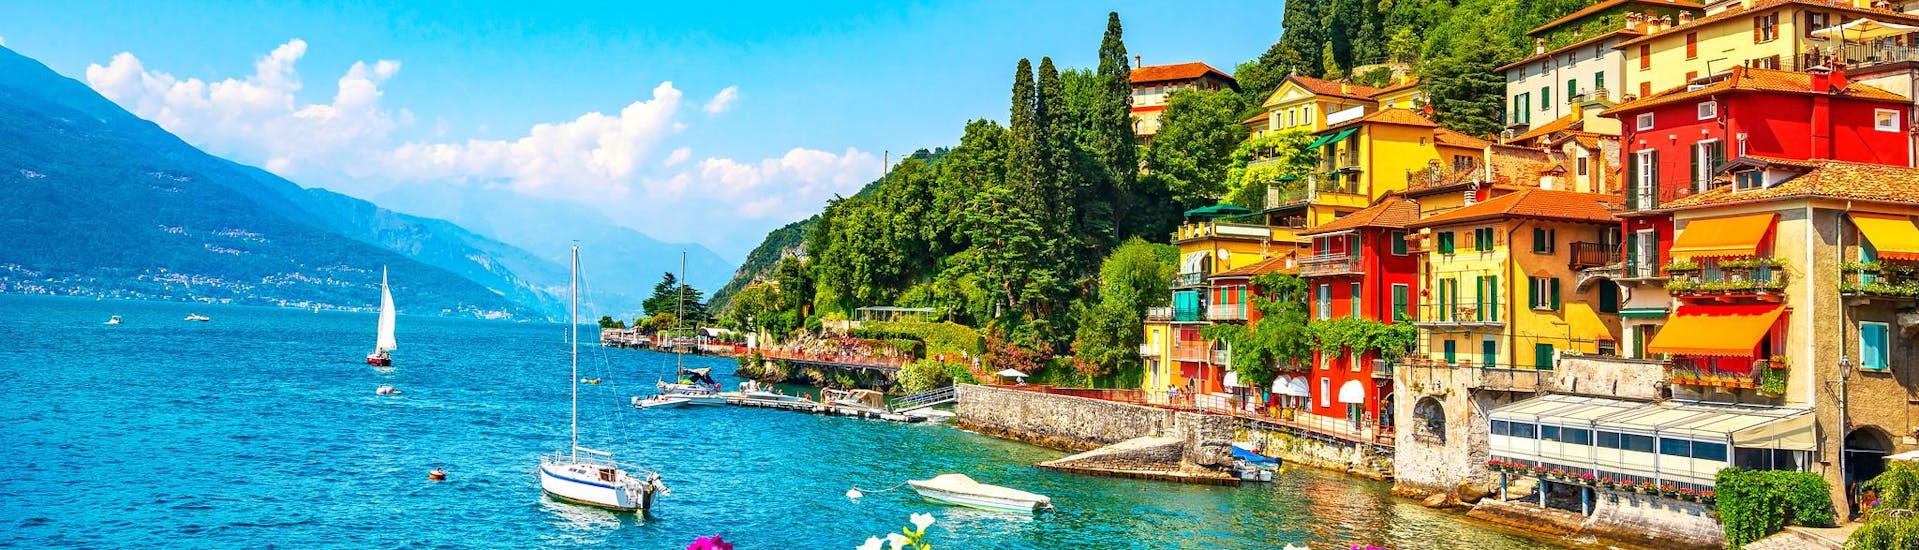 Diverse barche vicino alla costa del Lago di Como.